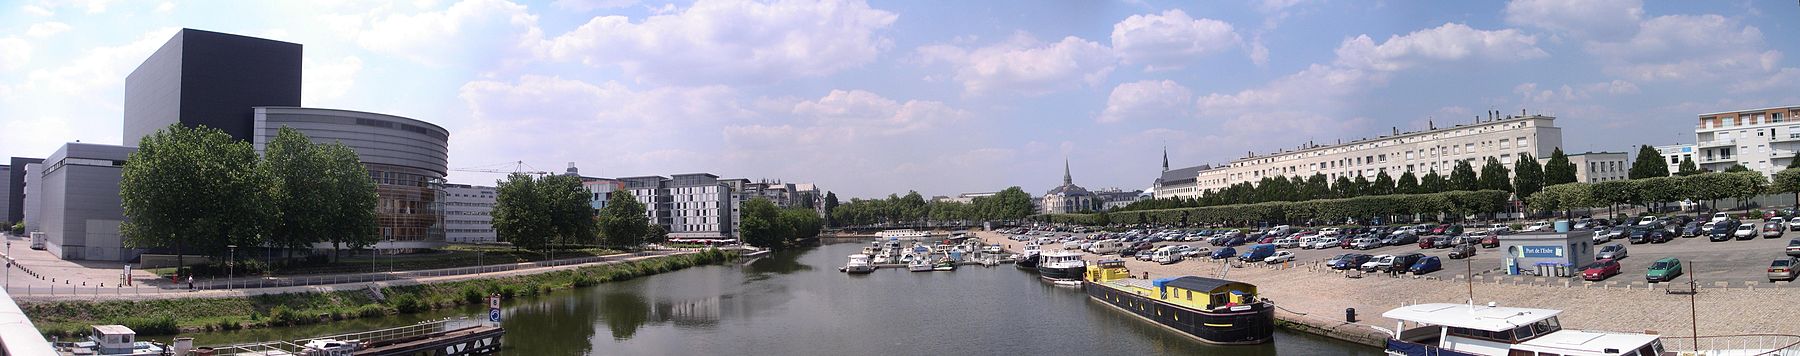 Panorama de Nantes vue de l'Erdre, avec le Centre des Congrès de Nantes (à gauche), la Gare de Nantes (à l'arrière plan à droite), Canal Saint-Félix (à l'arrière plan au centre).